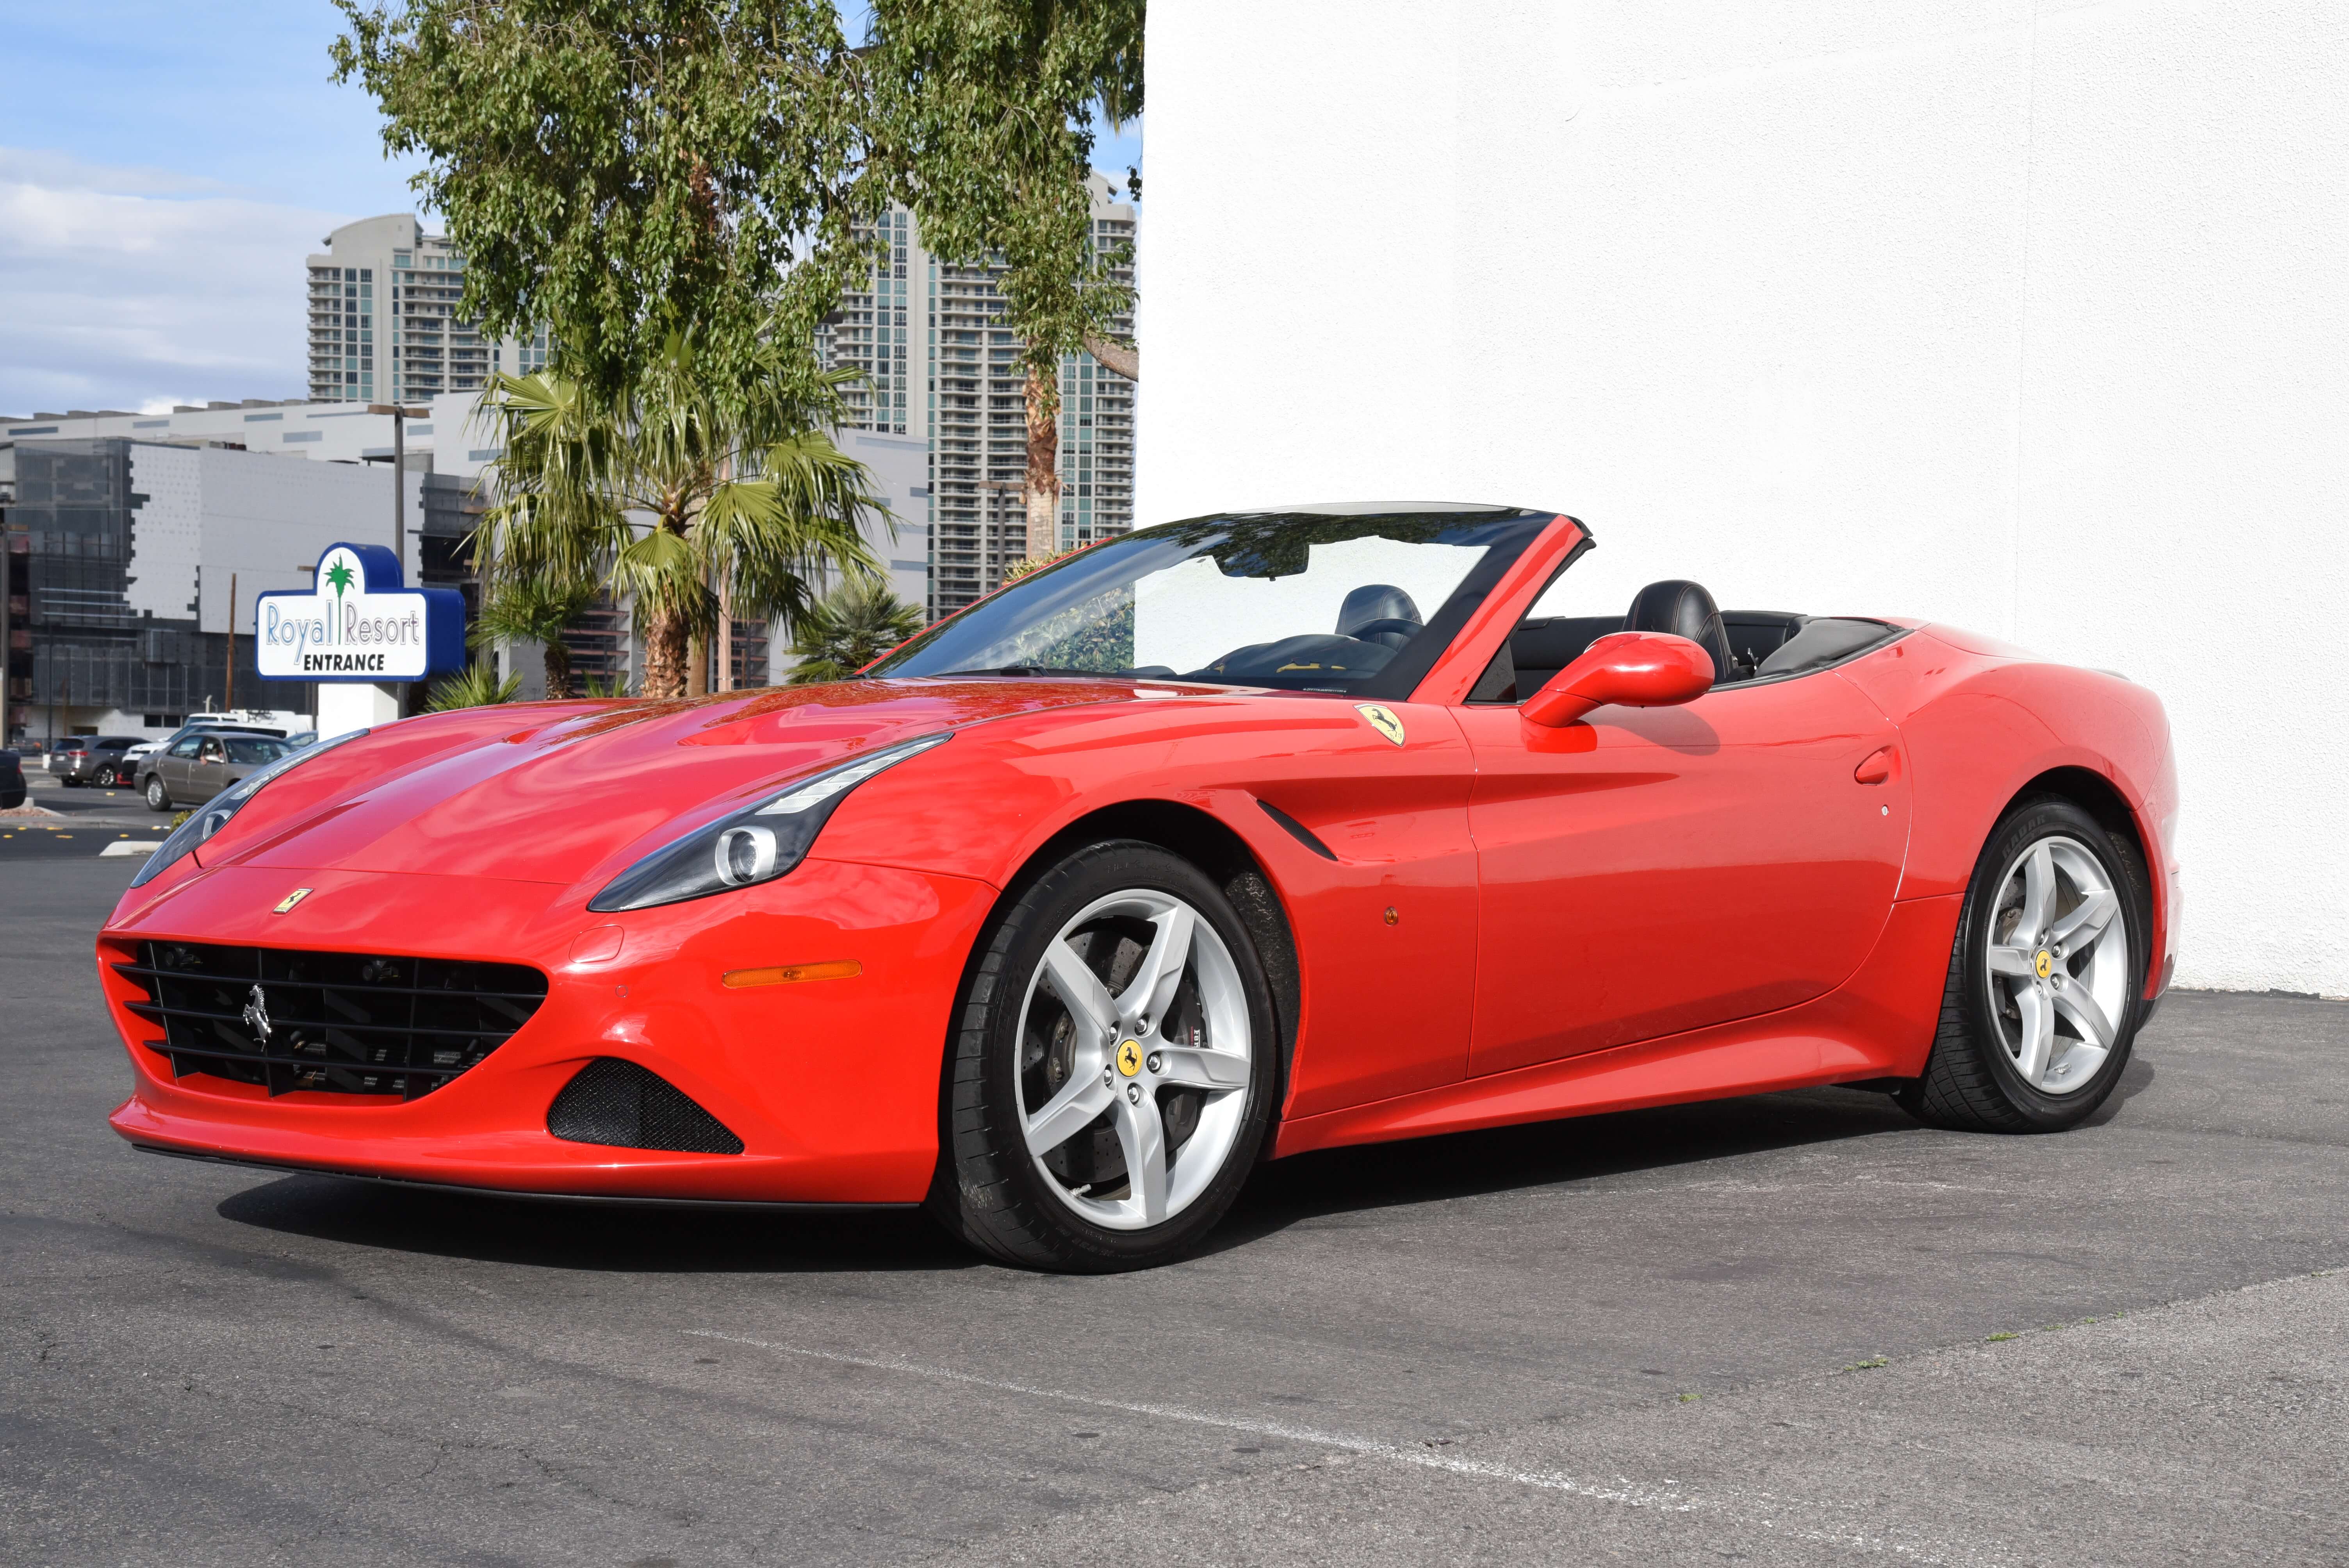 Ferrari California T Convertible | Ferrari Car Rental – Select Exotic Cars